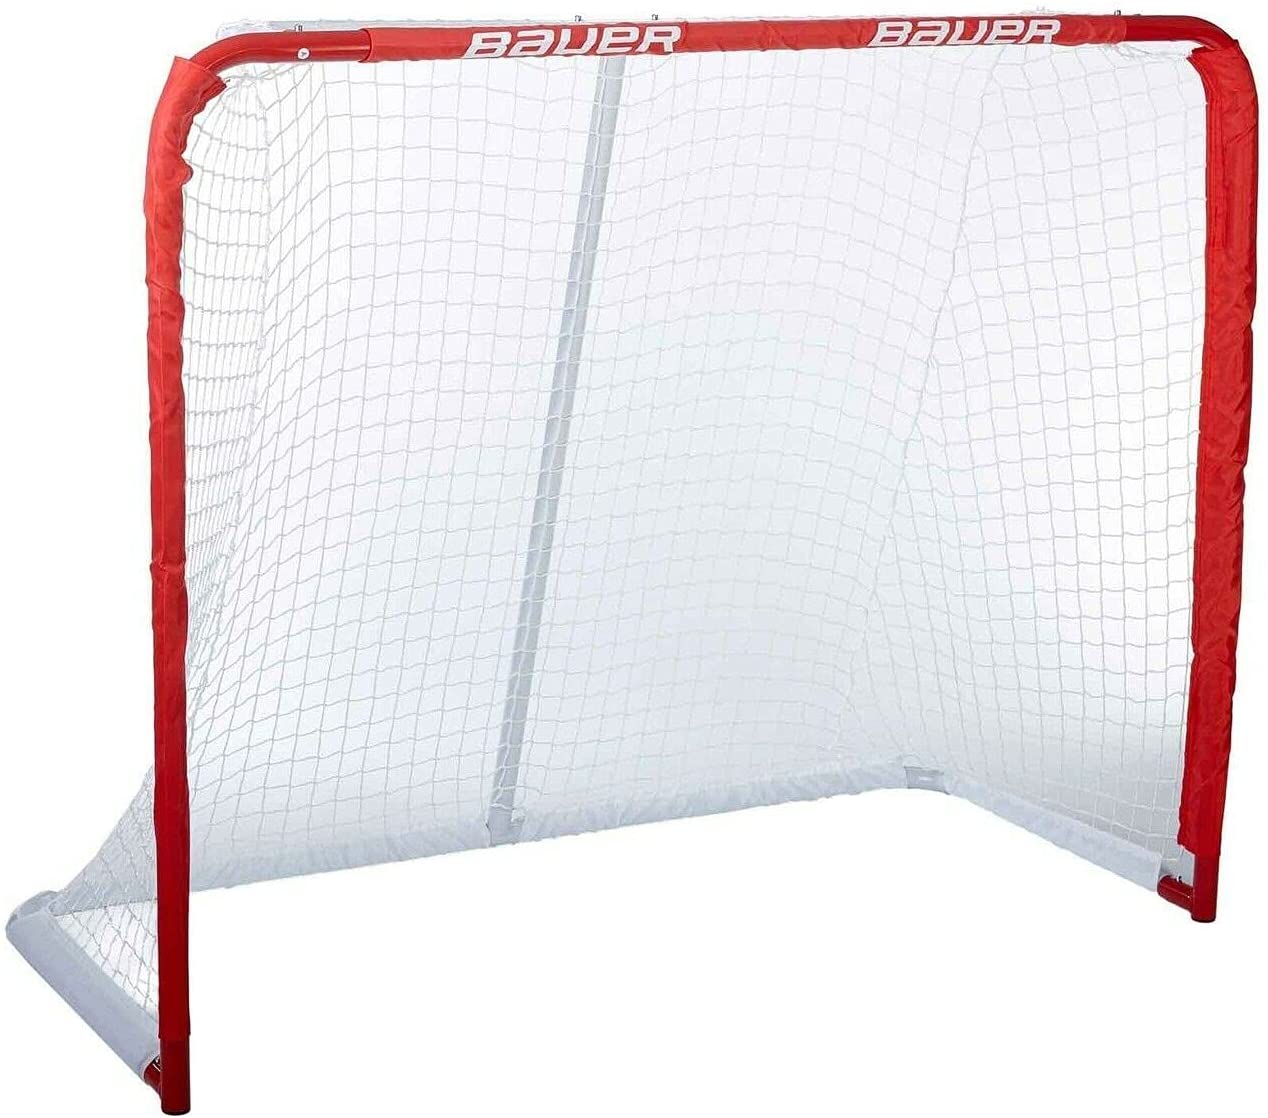 Bauer Deluxe Recreational Steel Goalie Net